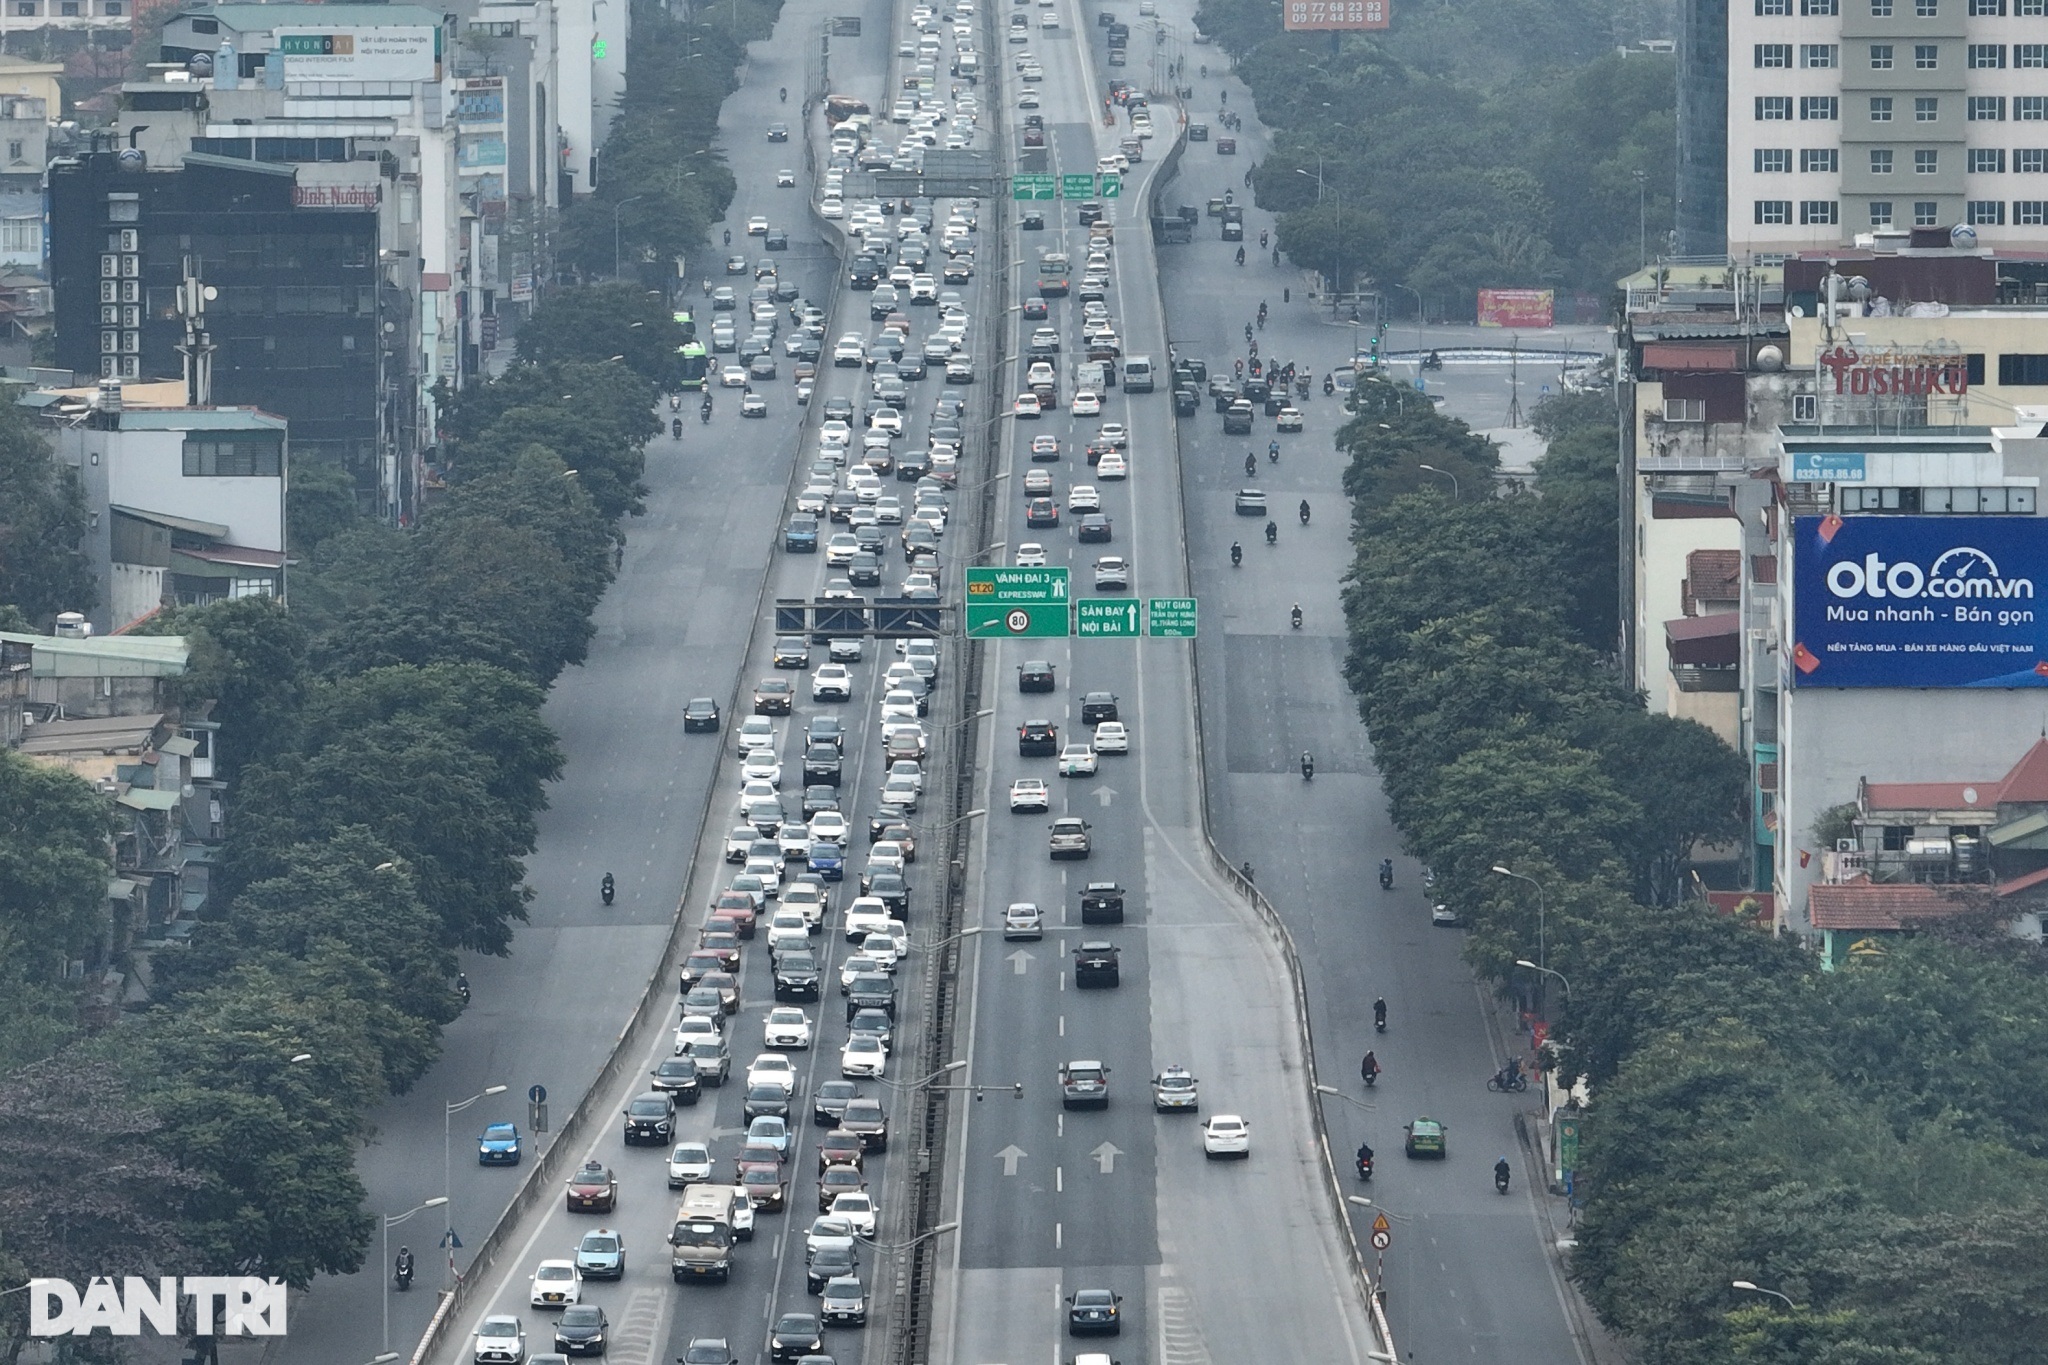 Mùng 2 Tết: Hà Nội ùn tắc nhiều kilomet đường vanh đai 3 trên cao - 11